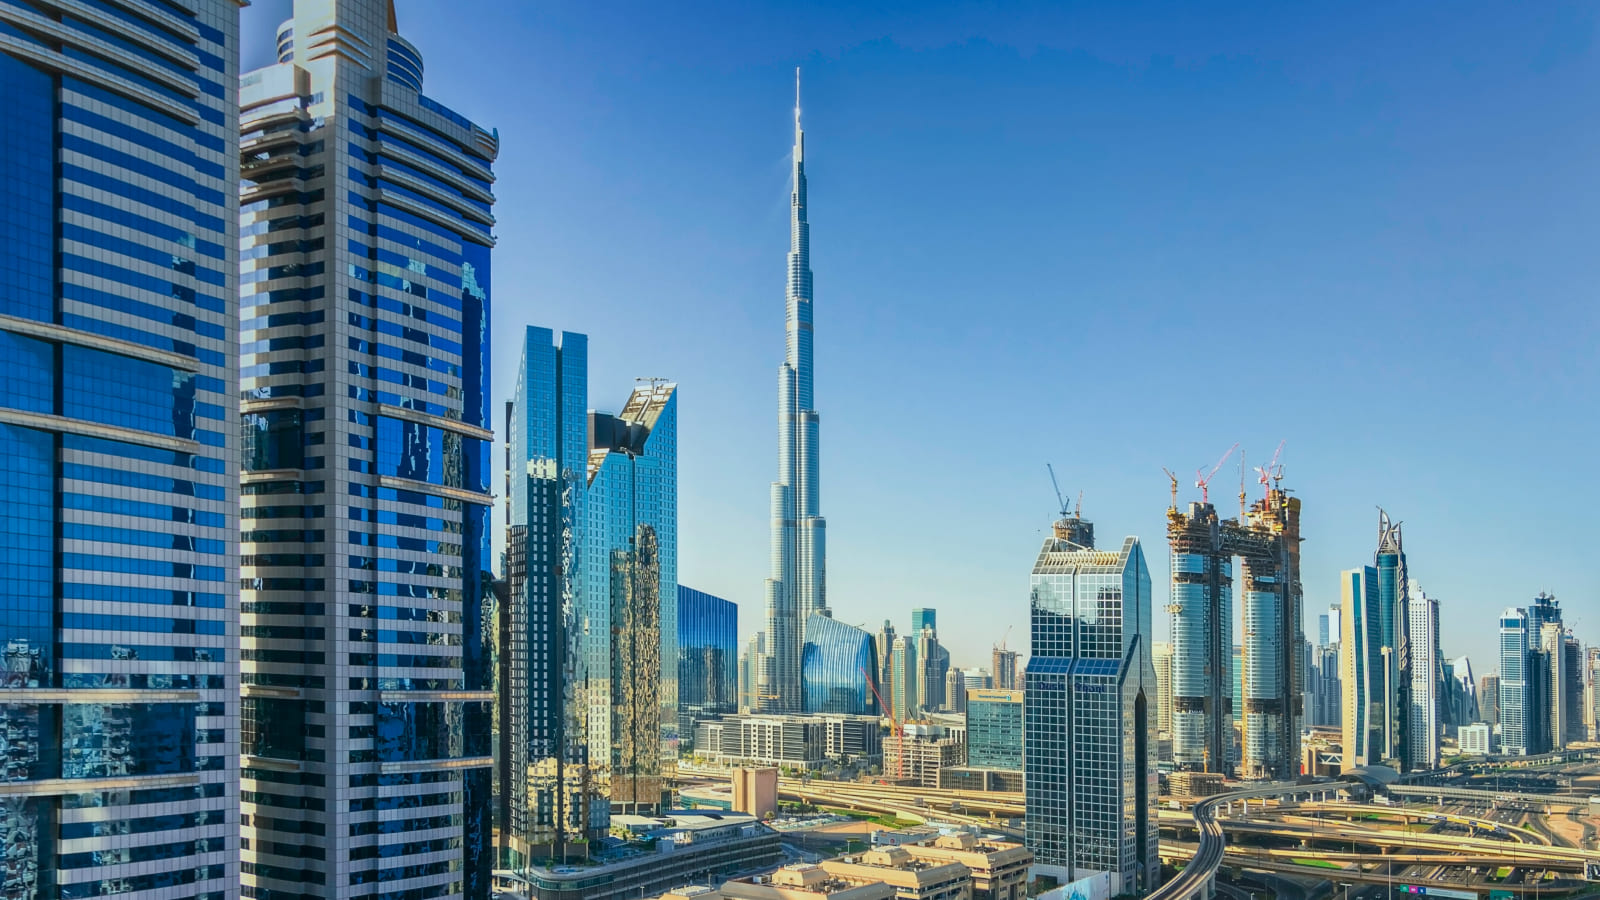 ОАЭ предлагают высокий уровень качества жизни и развитую инфраструктуру.